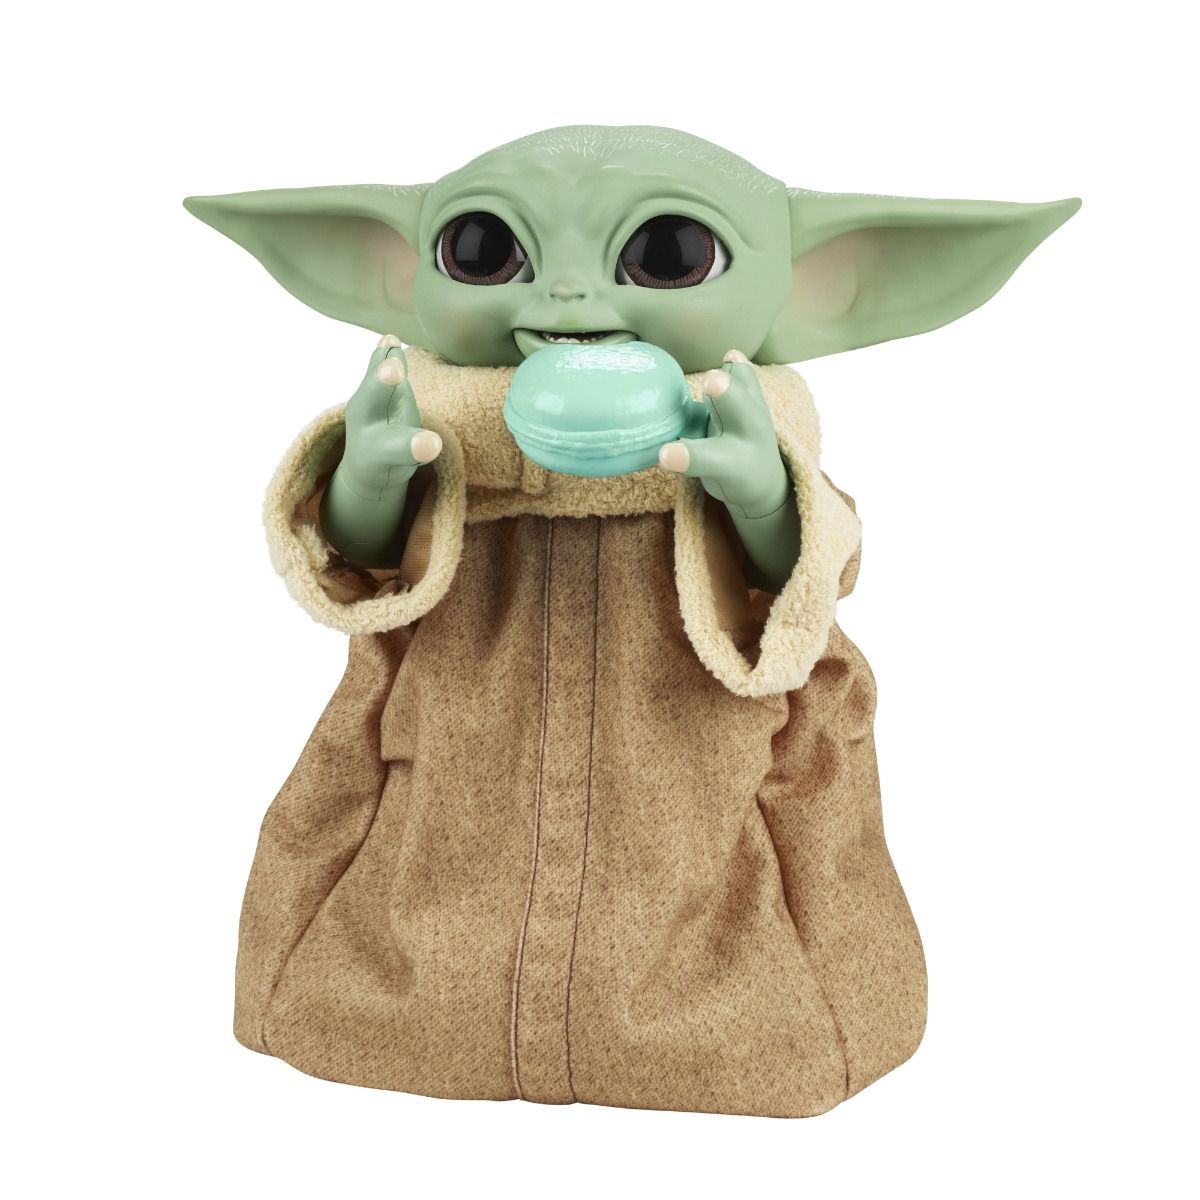 Peluche de Star Wars, muñeco de peluche Grogu de The Mandalorian, figura de  11 pulgadas, peluches coleccionables para niños